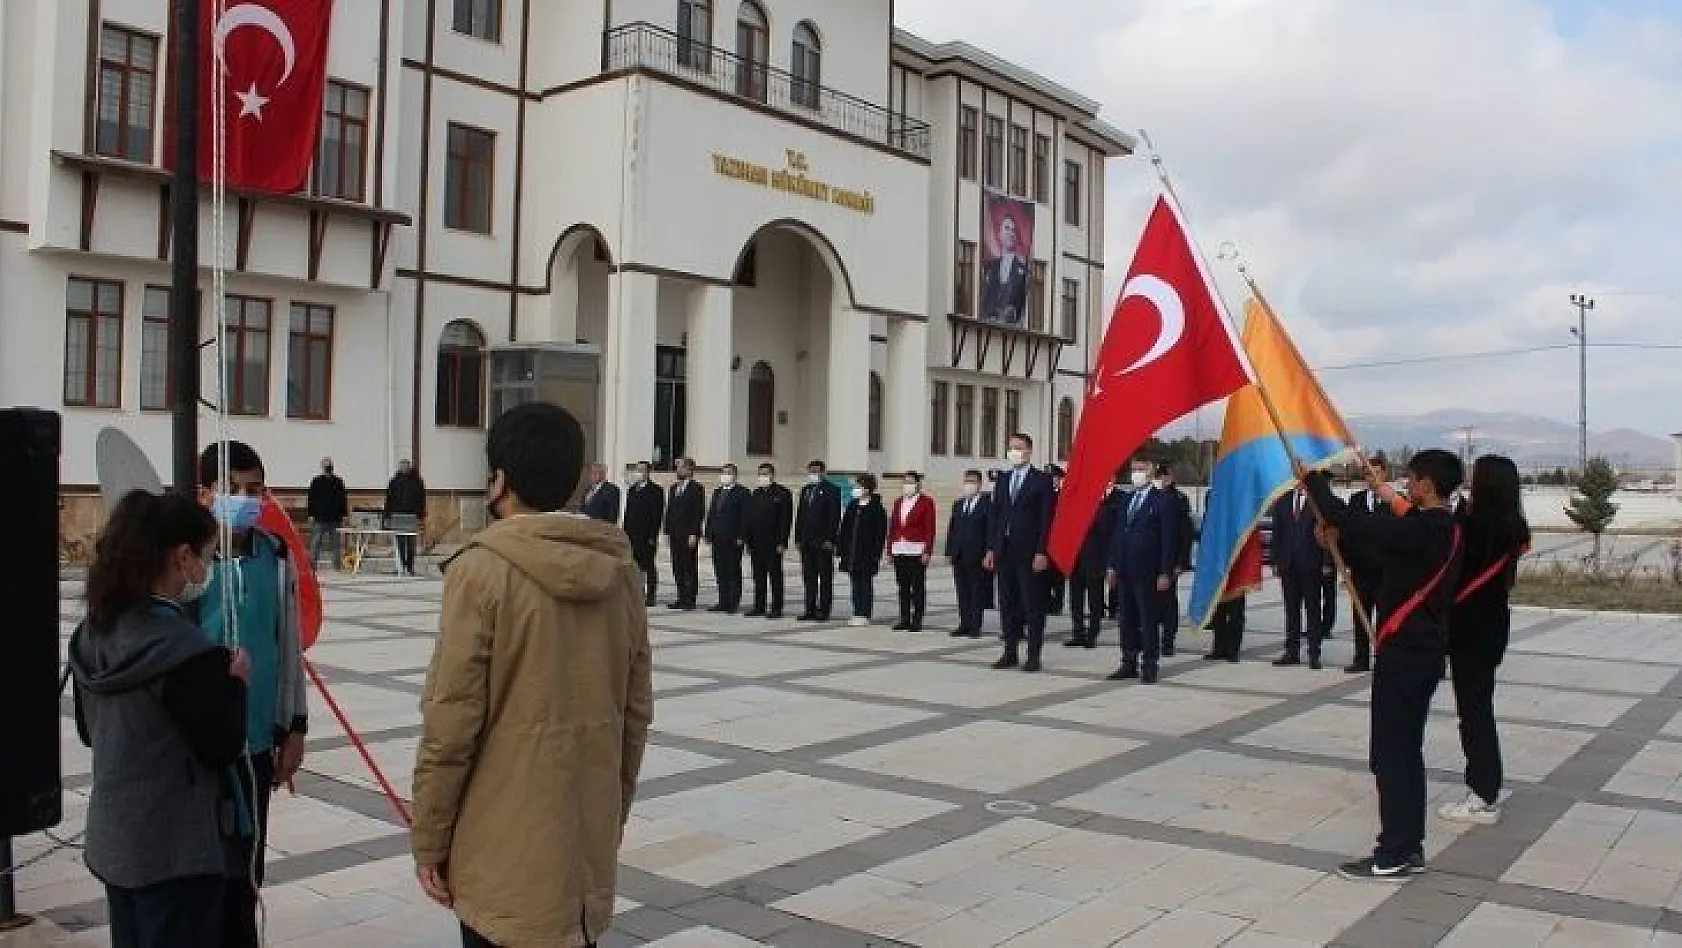 Yazıhan'da Çanakkale Zaferi'nin 107. Yılı etkinlikleri